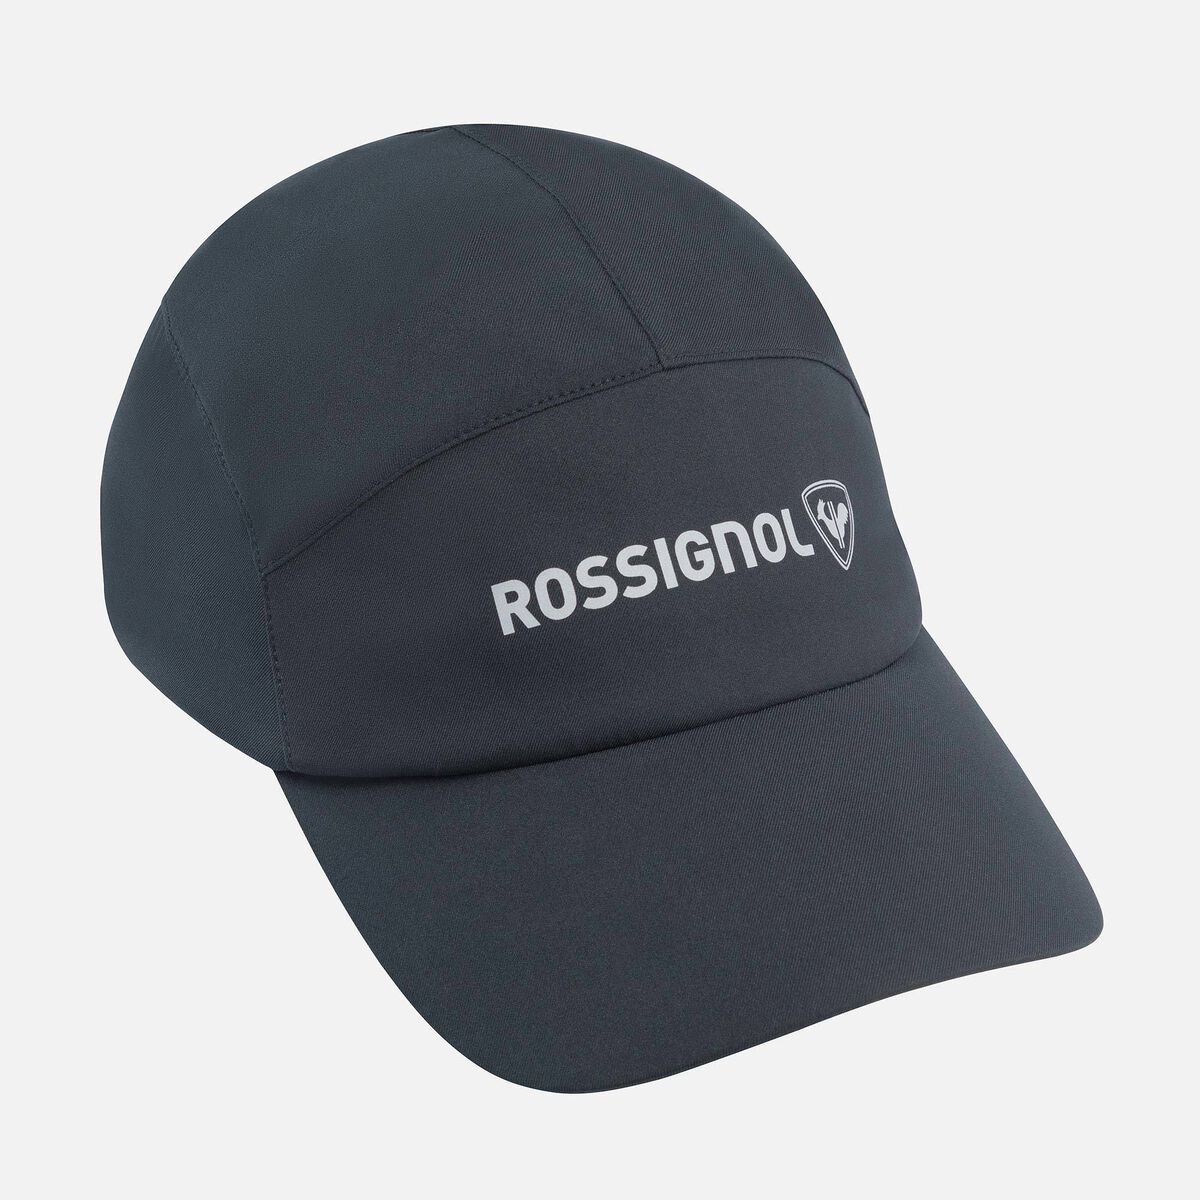 Rossignol Unisex Active cap black Black